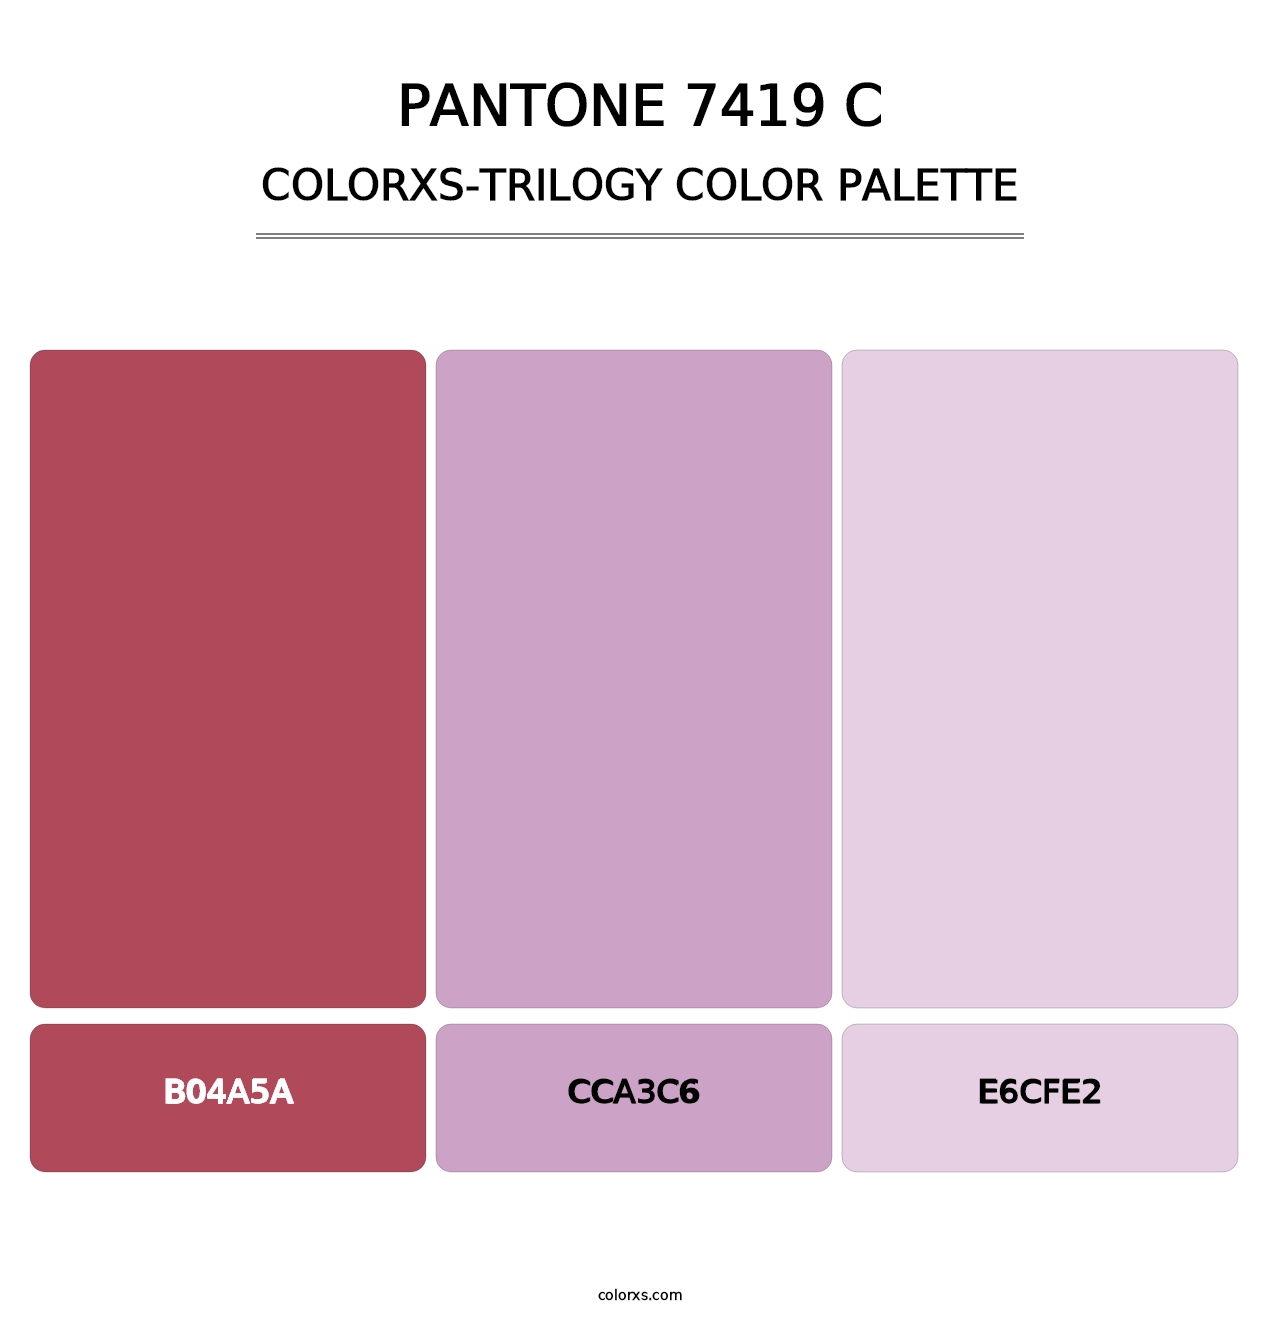 PANTONE 7419 C - Colorxs Trilogy Palette